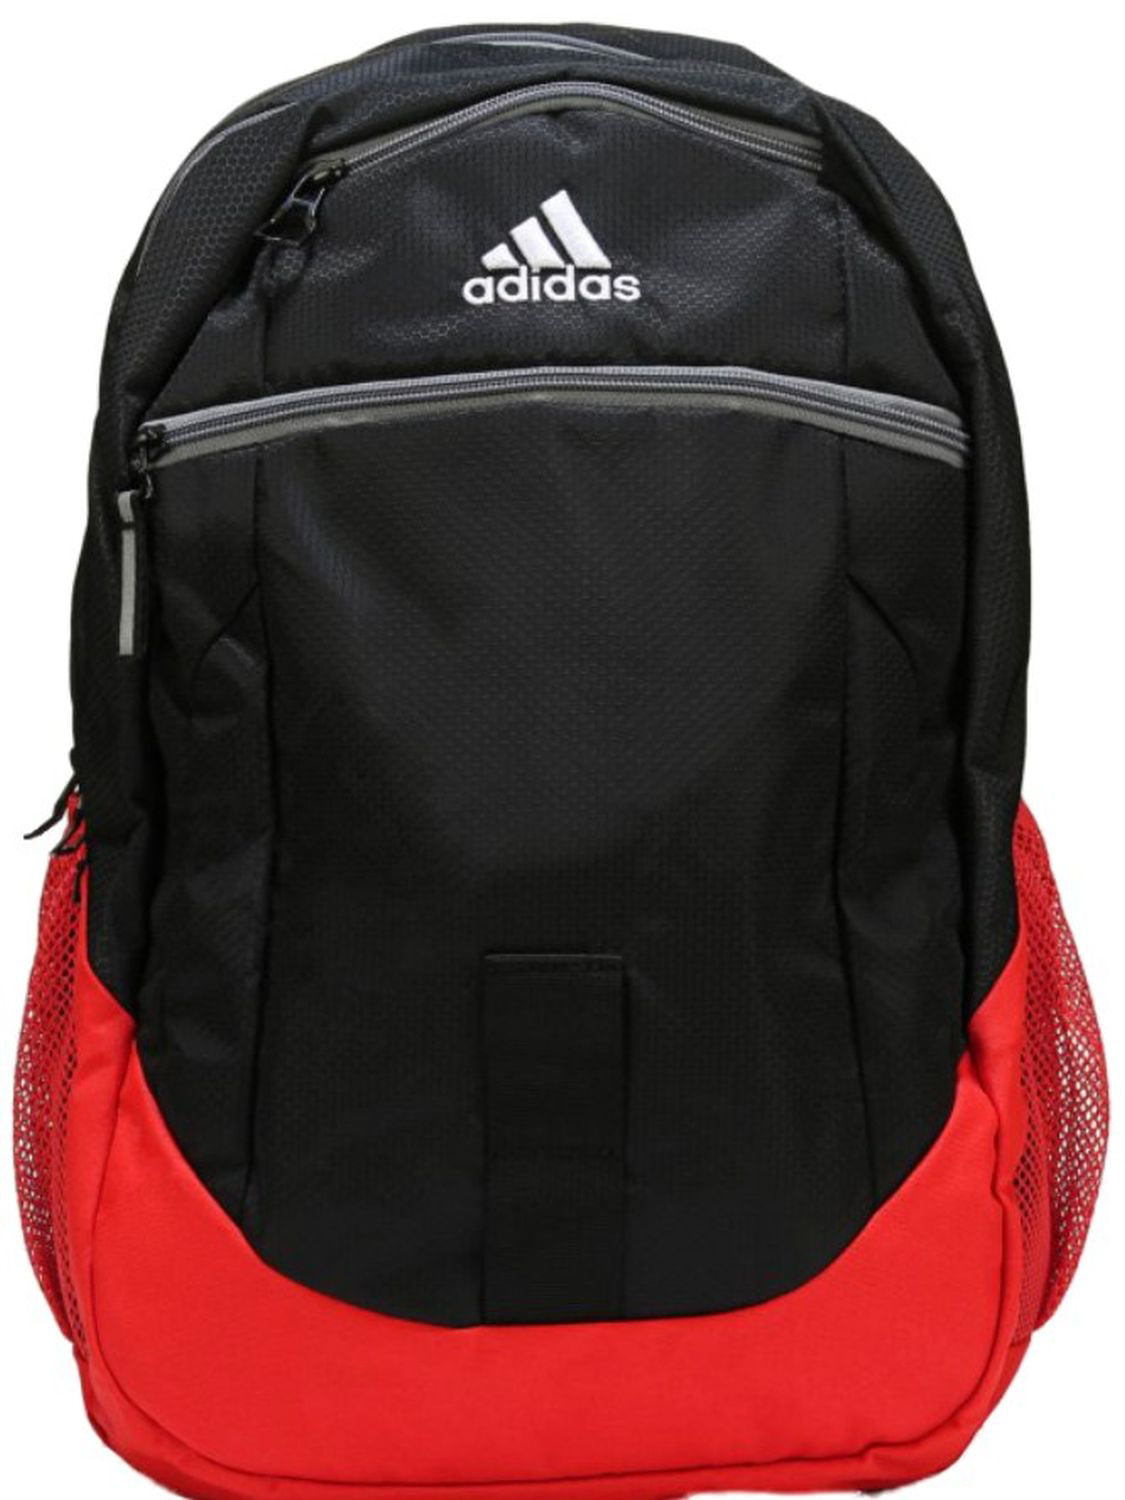 adidas foundation iv backpack black